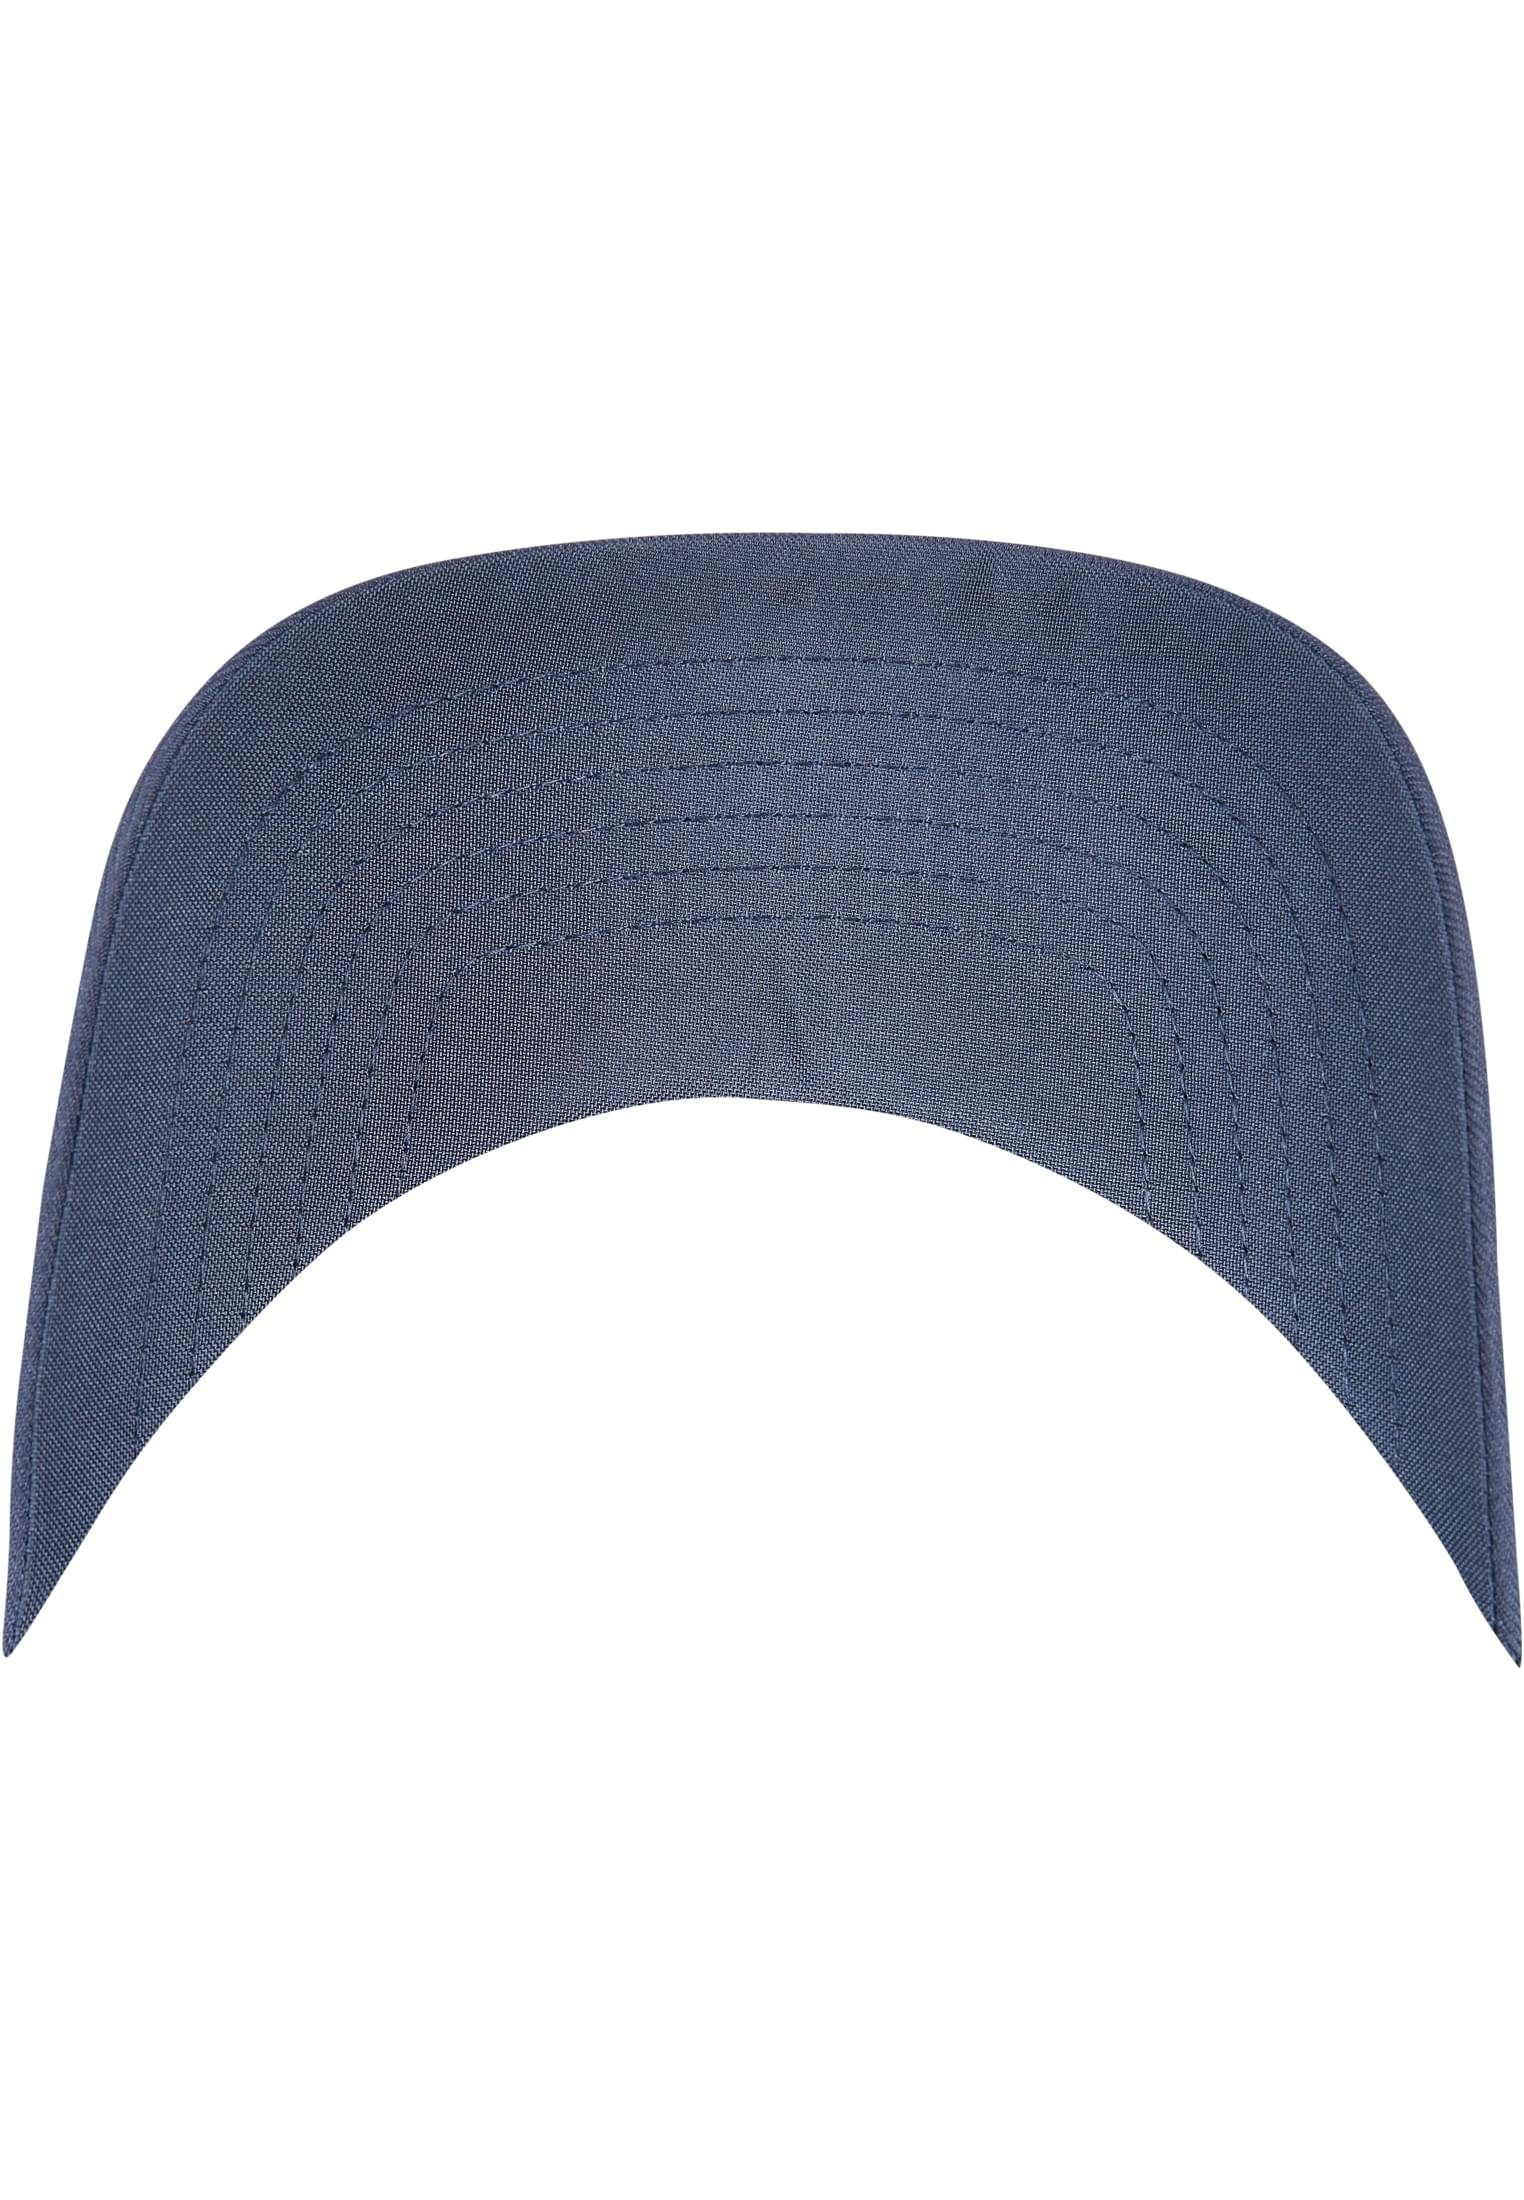 navy Flex Accessoires CAP Cap Flexfit NU® FLEXFIT